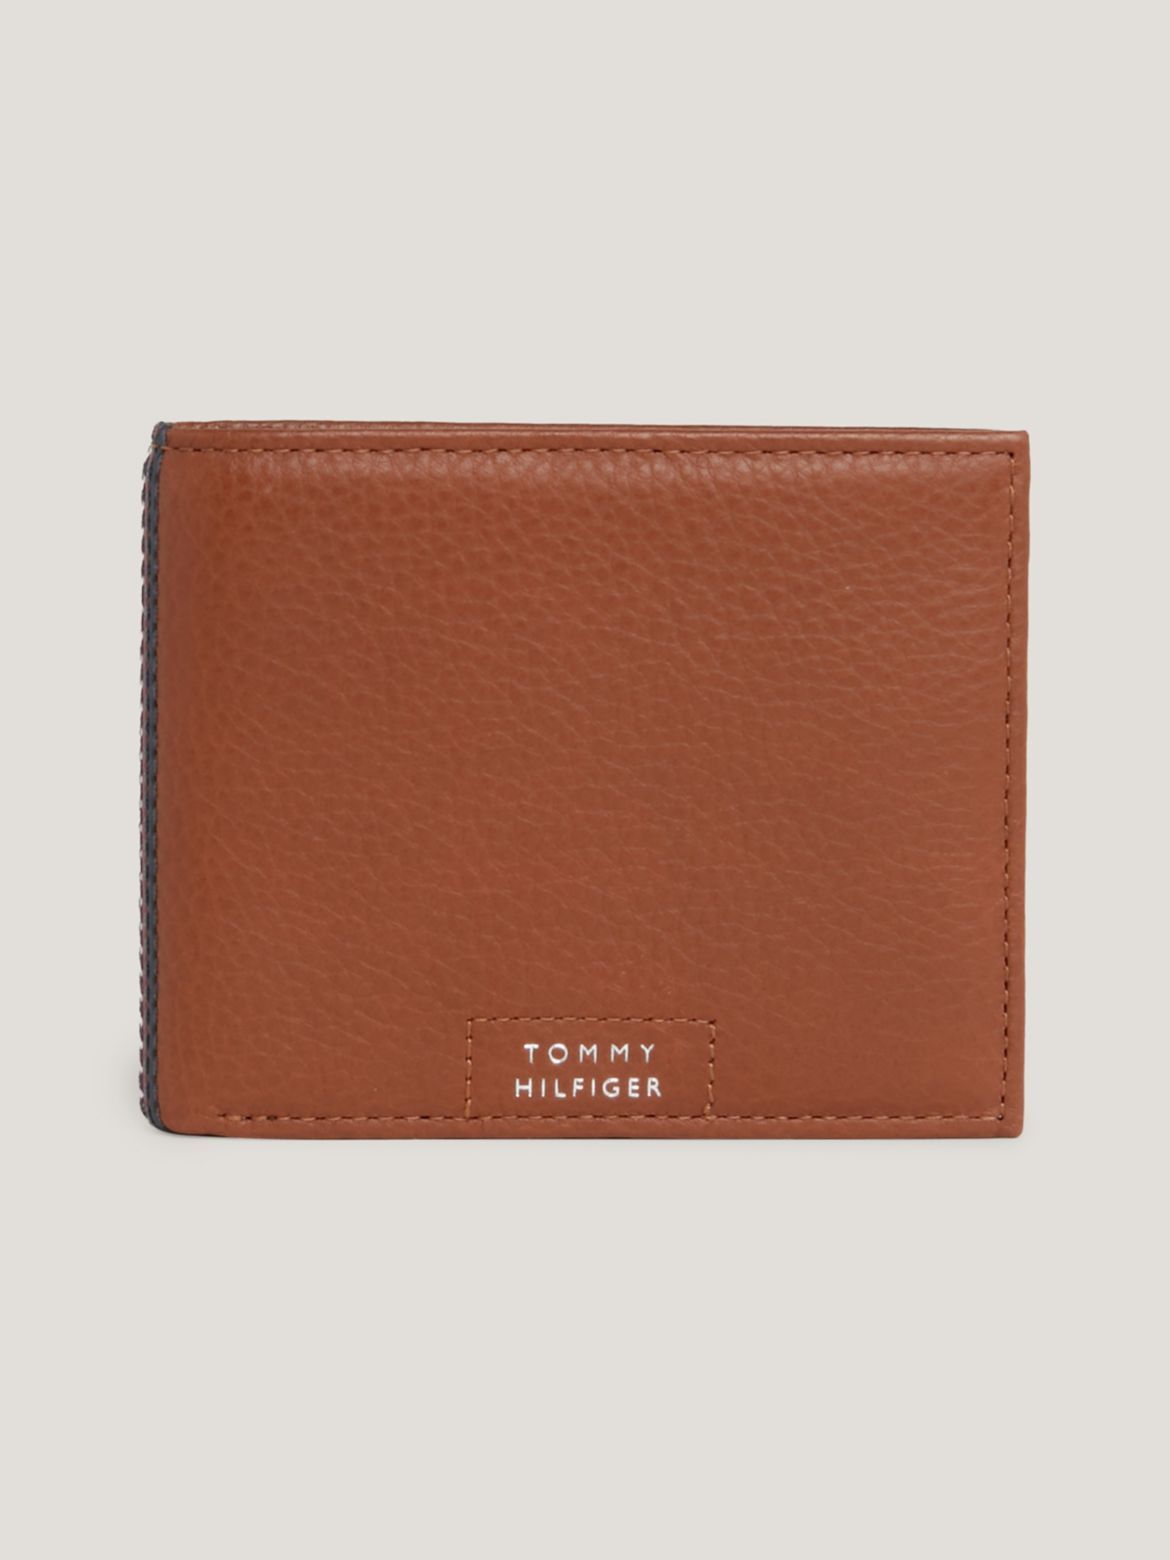 Tommy Hilfiger Men's Hilfiger Leather Card Wallet - Brown